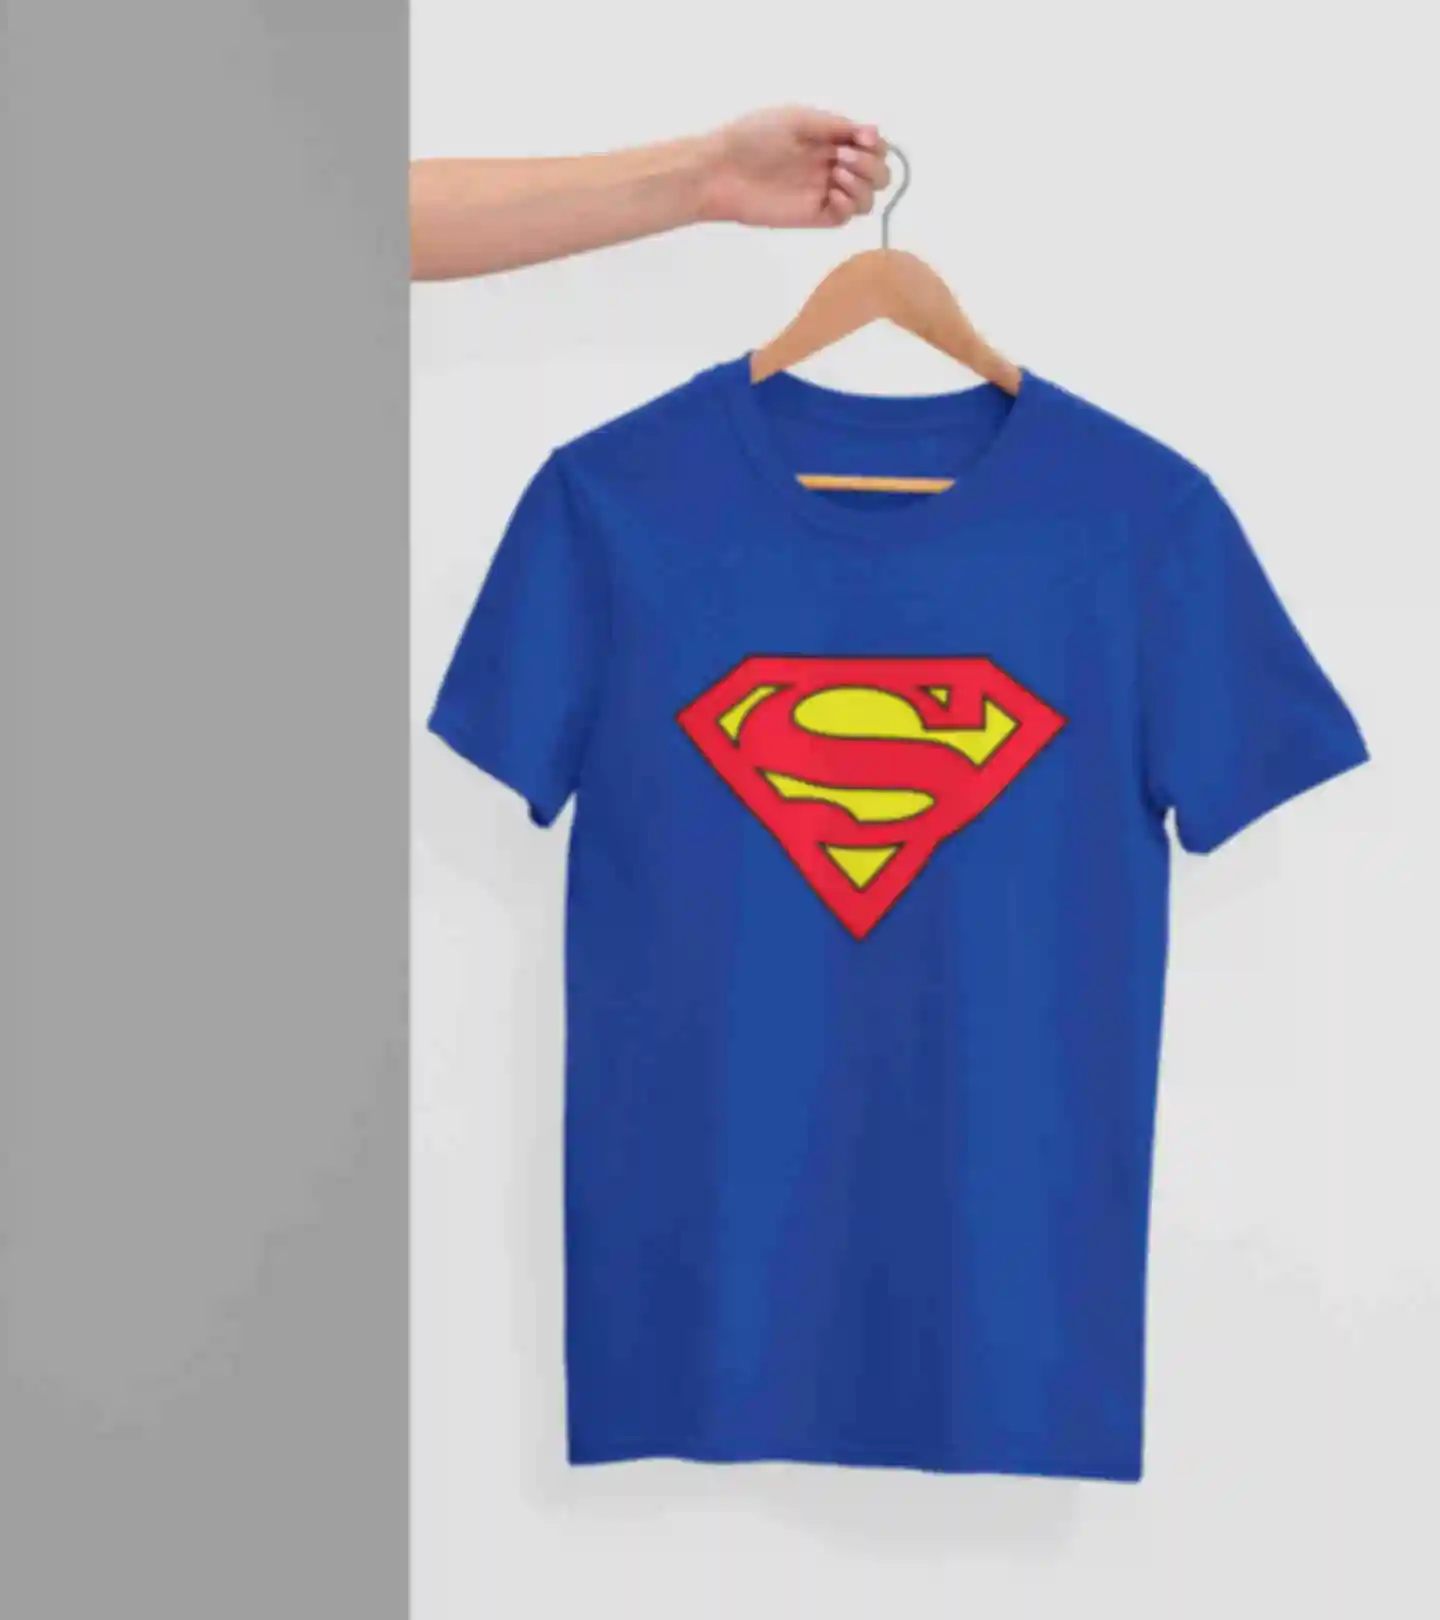 Футболка №14 • Логотип Супермена • Superman • Мерч • Одежда с супергероями в стиле DC. Фото №1